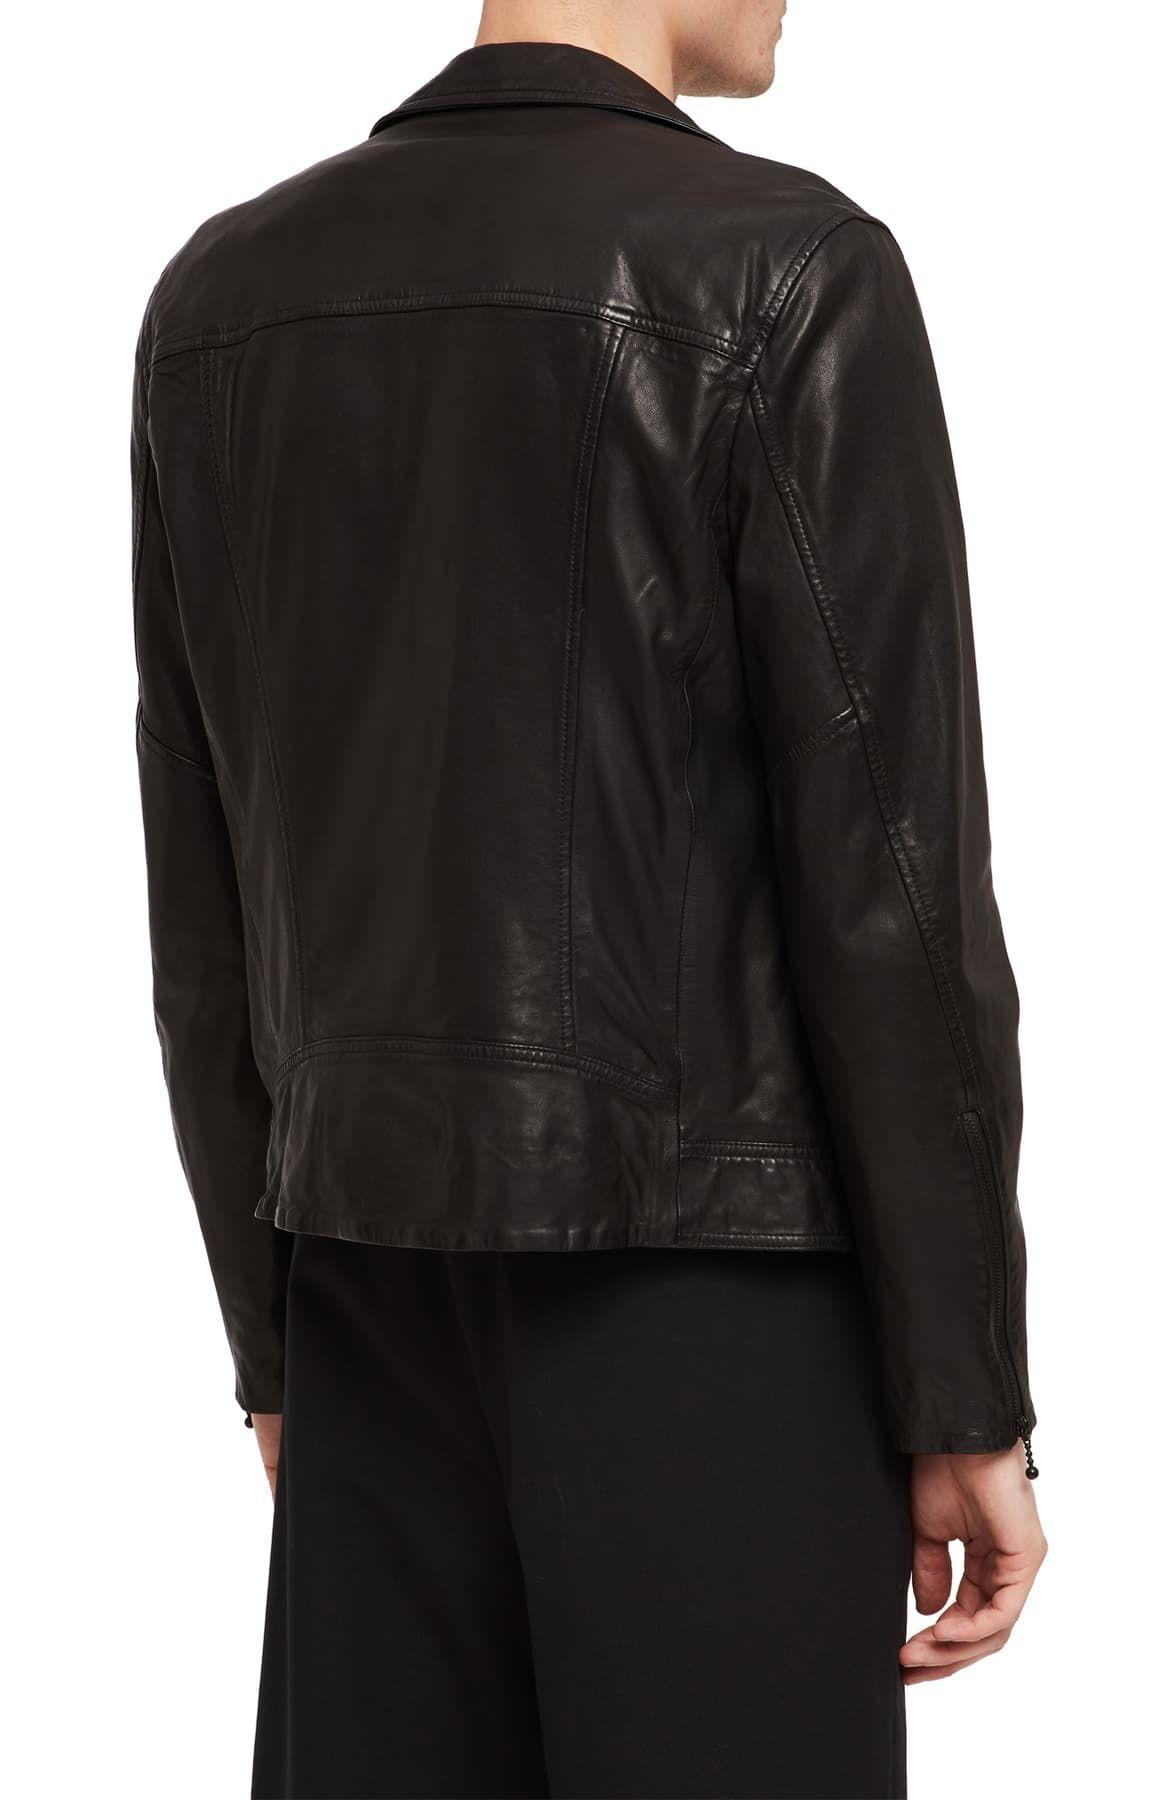 AllSaints Holt Slim Fit Leather Biker Jacket in Black for Men - Lyst